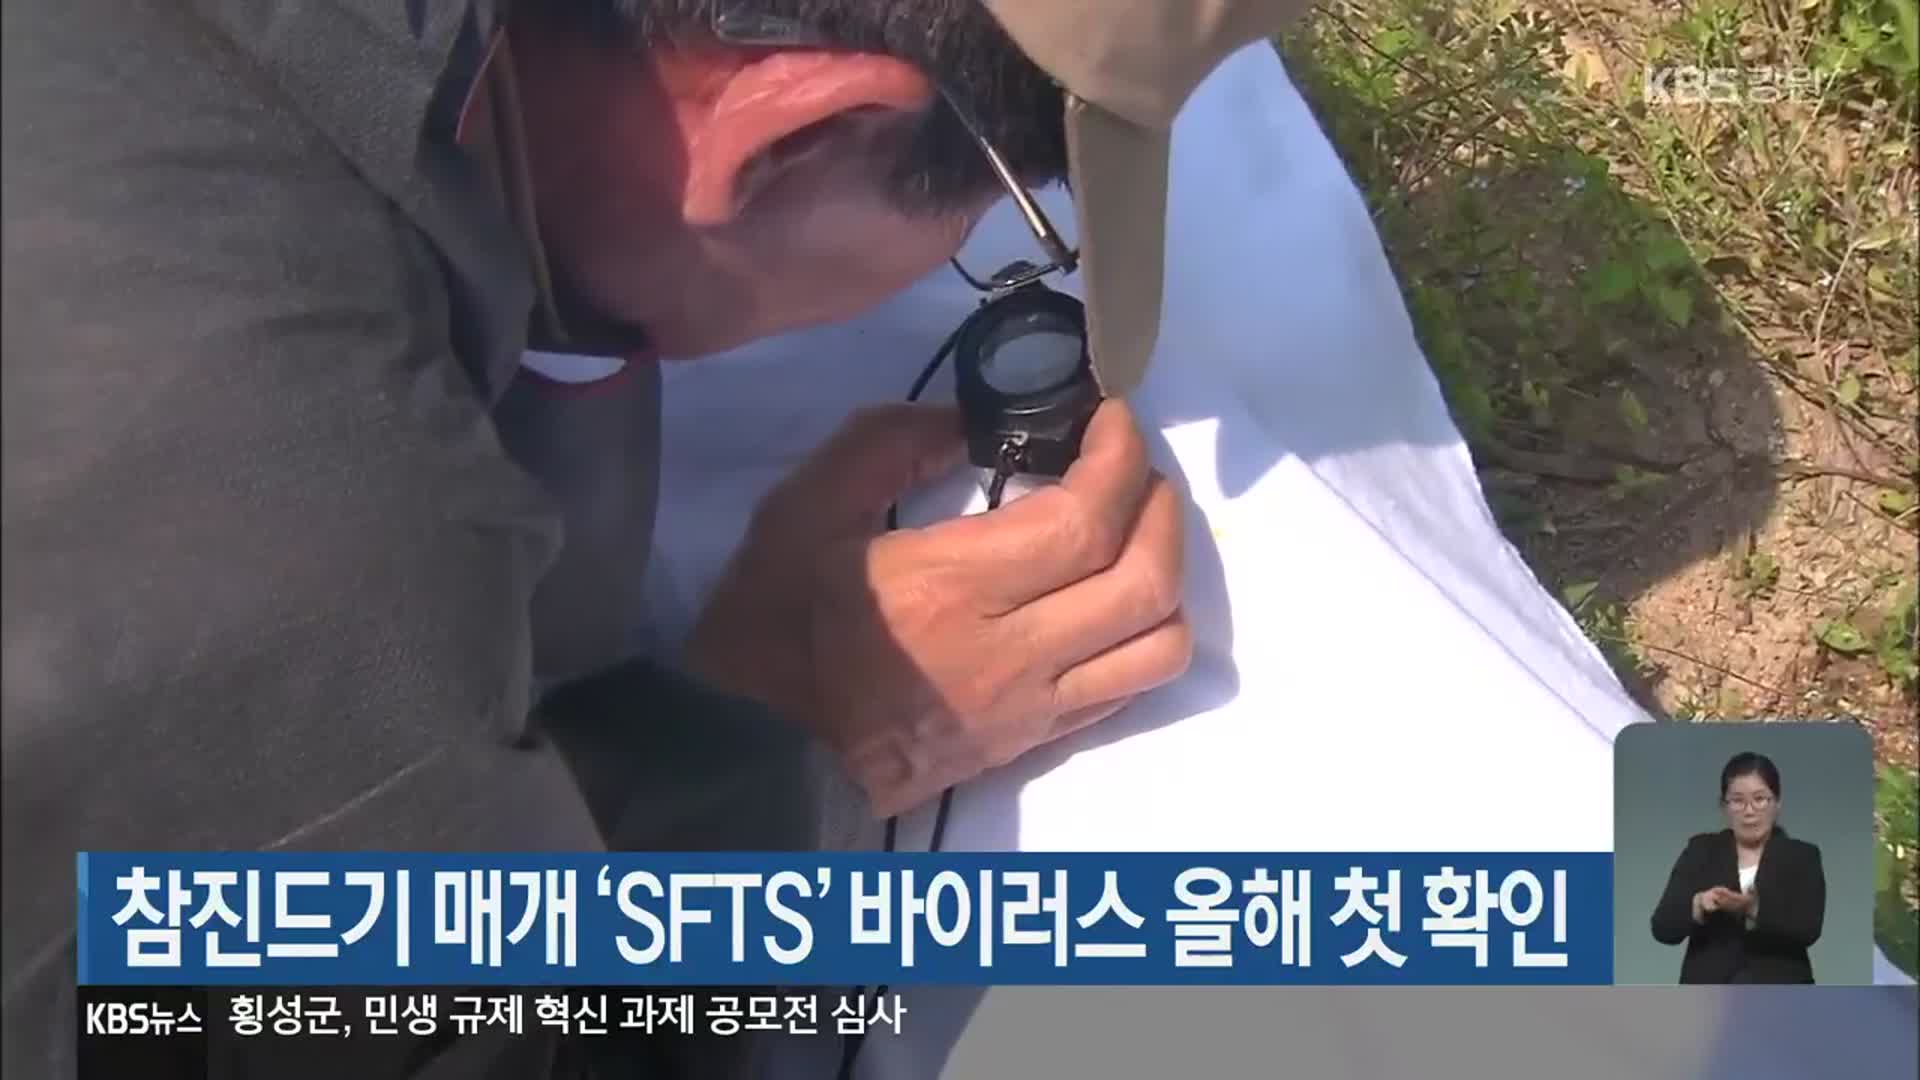 참진드기 매개 ‘SFTS’ 바이러스 올해 첫 확인